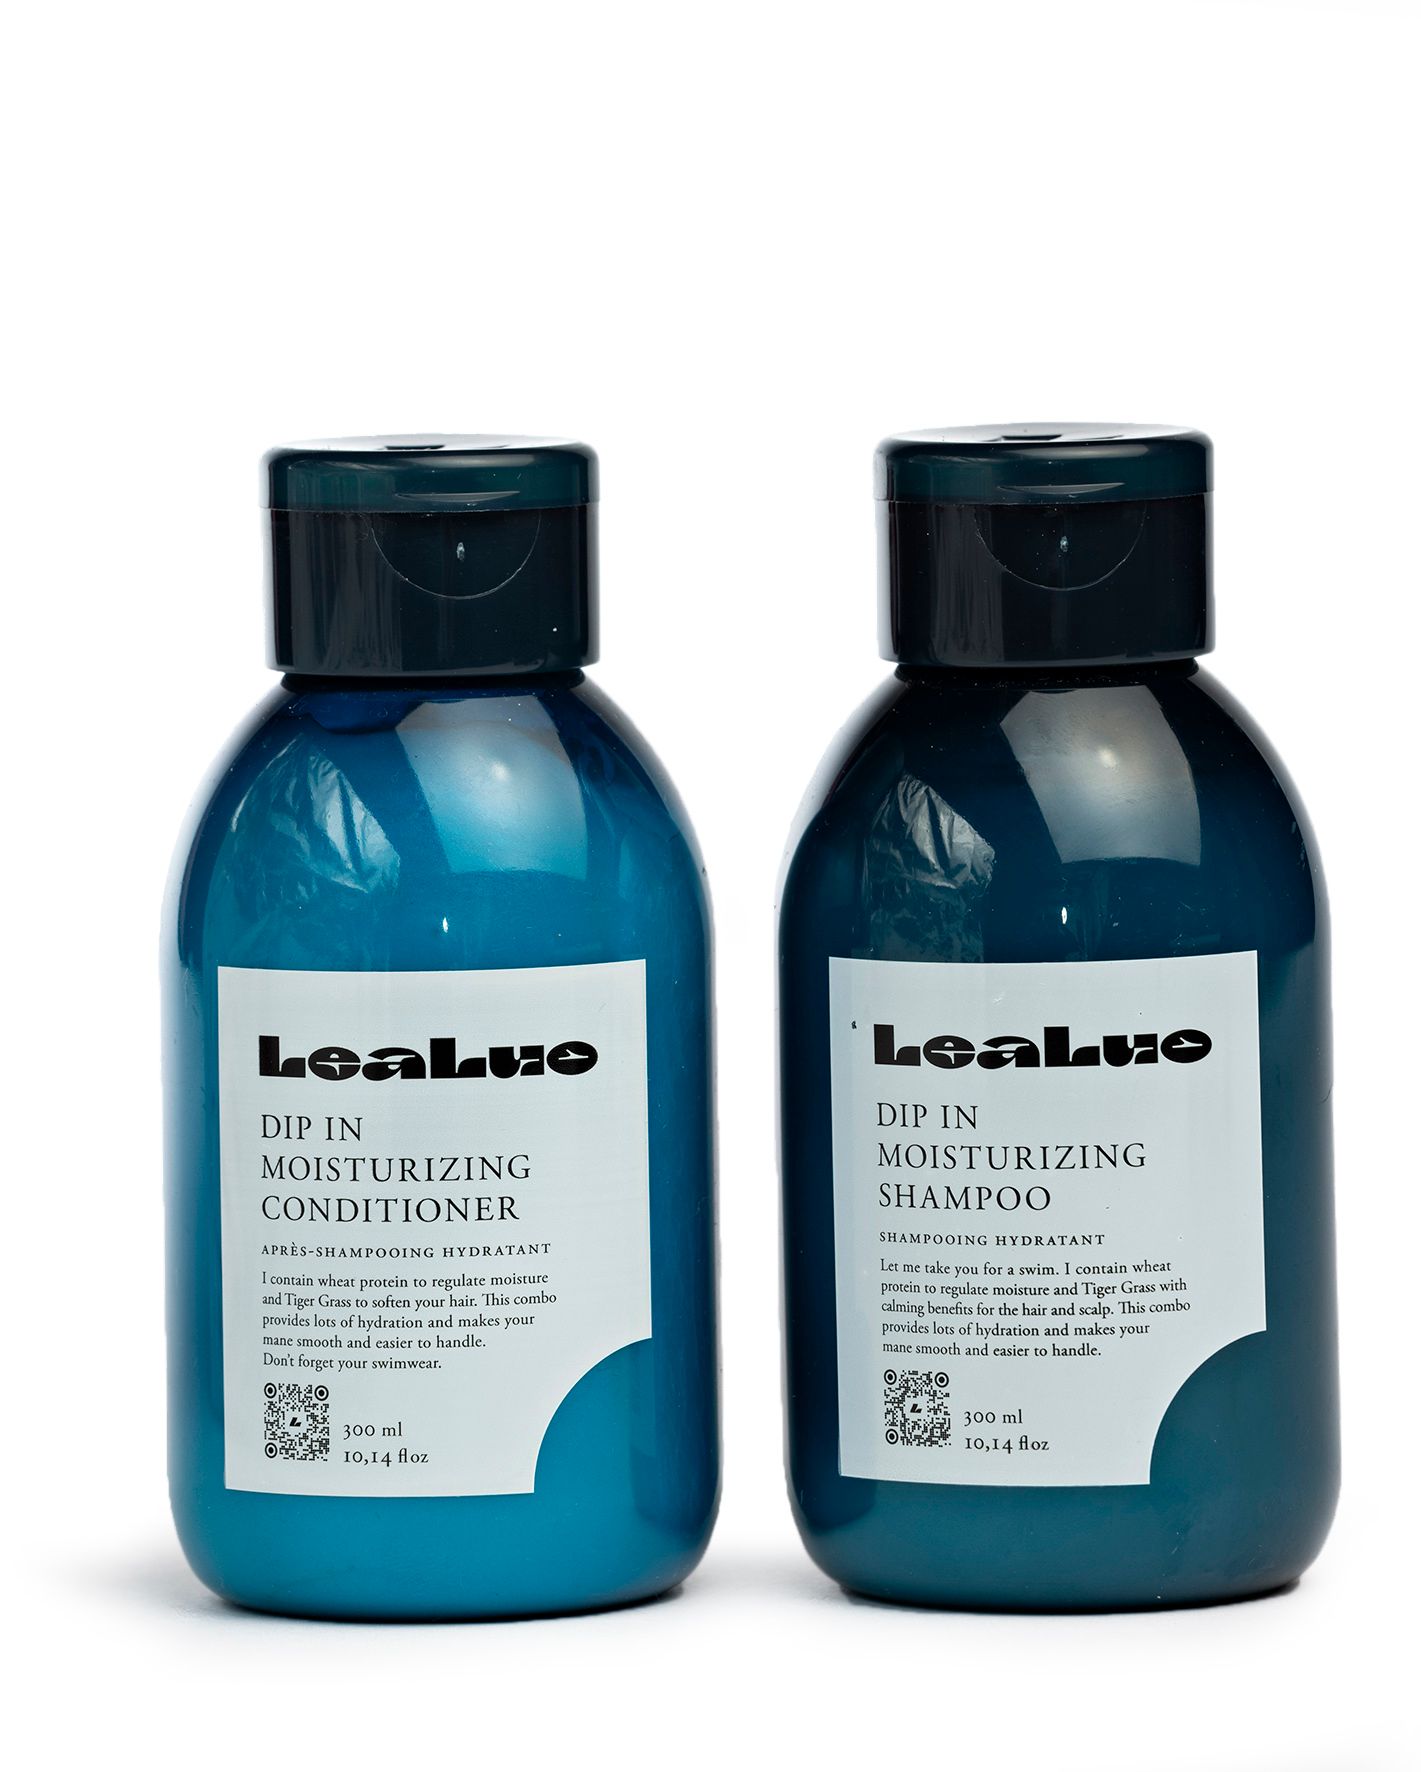  Kuivia hiuksia kosteuttavat LeaLuo-sampoo ja -hoitoaine. 300 ml 22 e/kpl.  © Tommi Tuomi